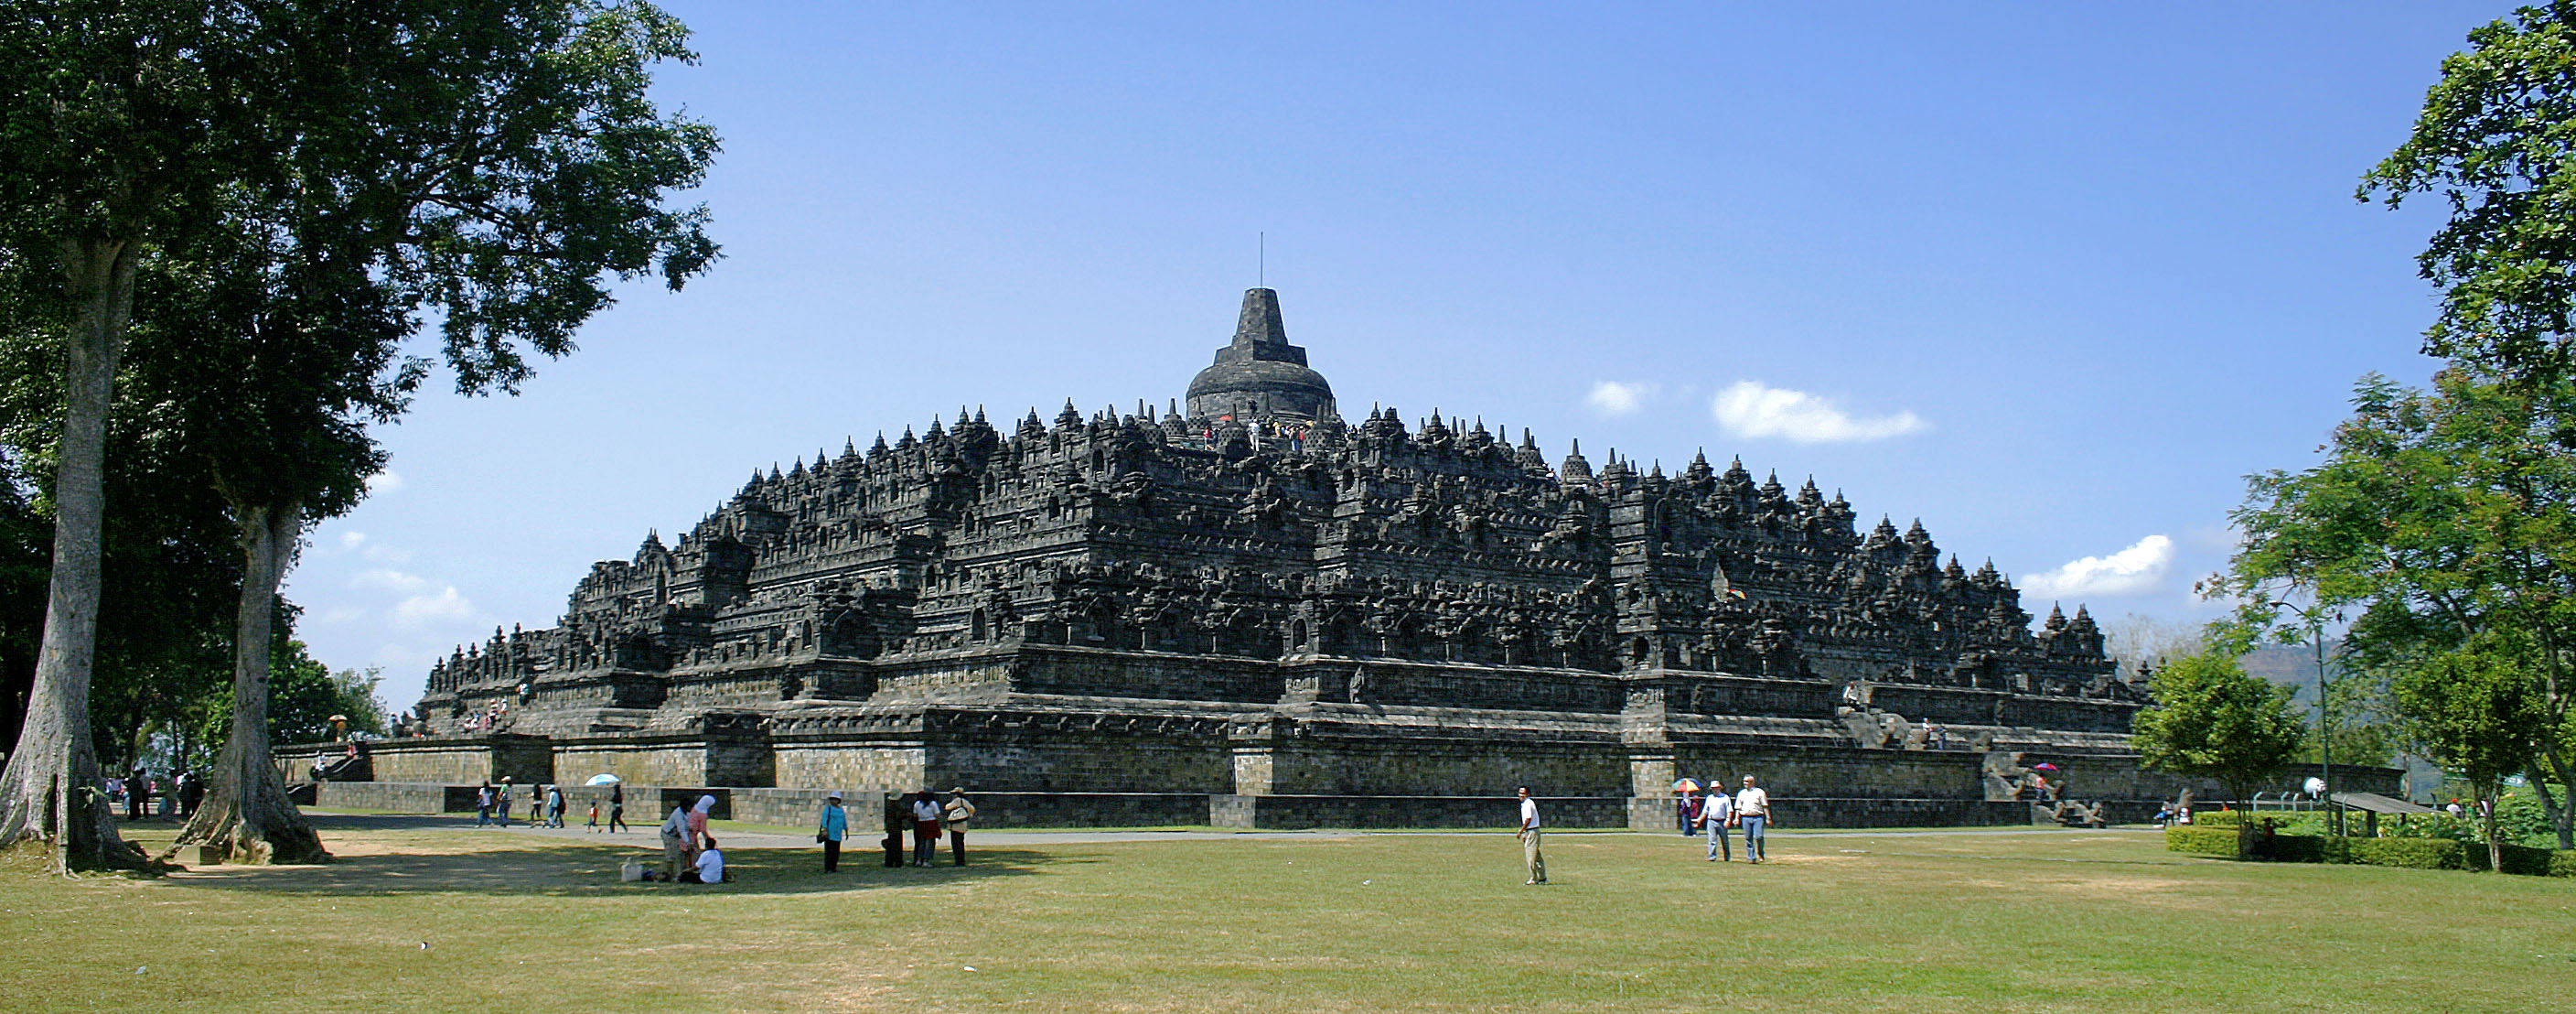 Mengenal Candi Borobudur Dan Sejarahnya KitaCerdascom